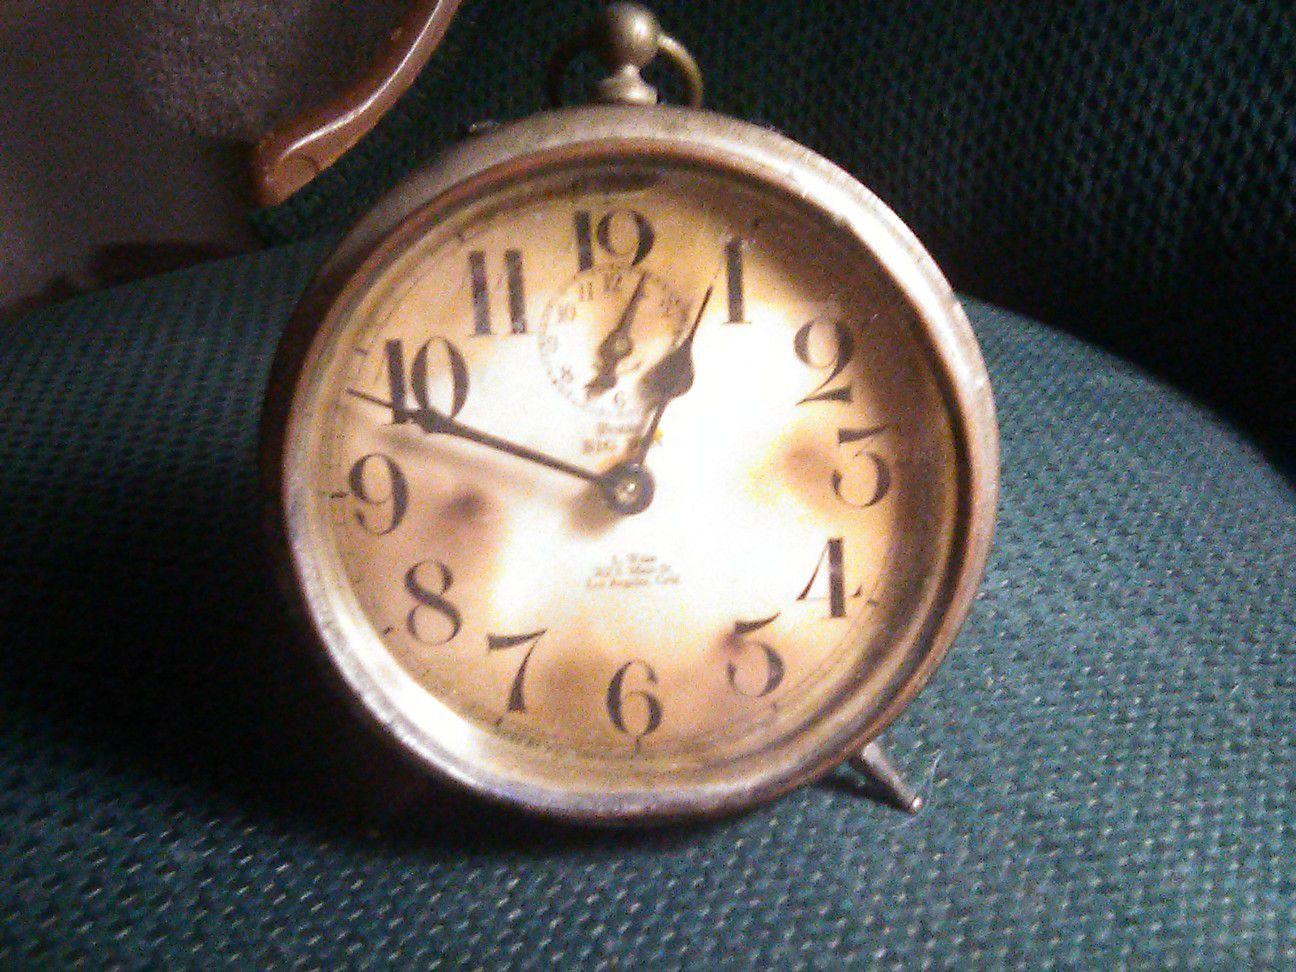 Vintage big Ben wind-up alarm clock